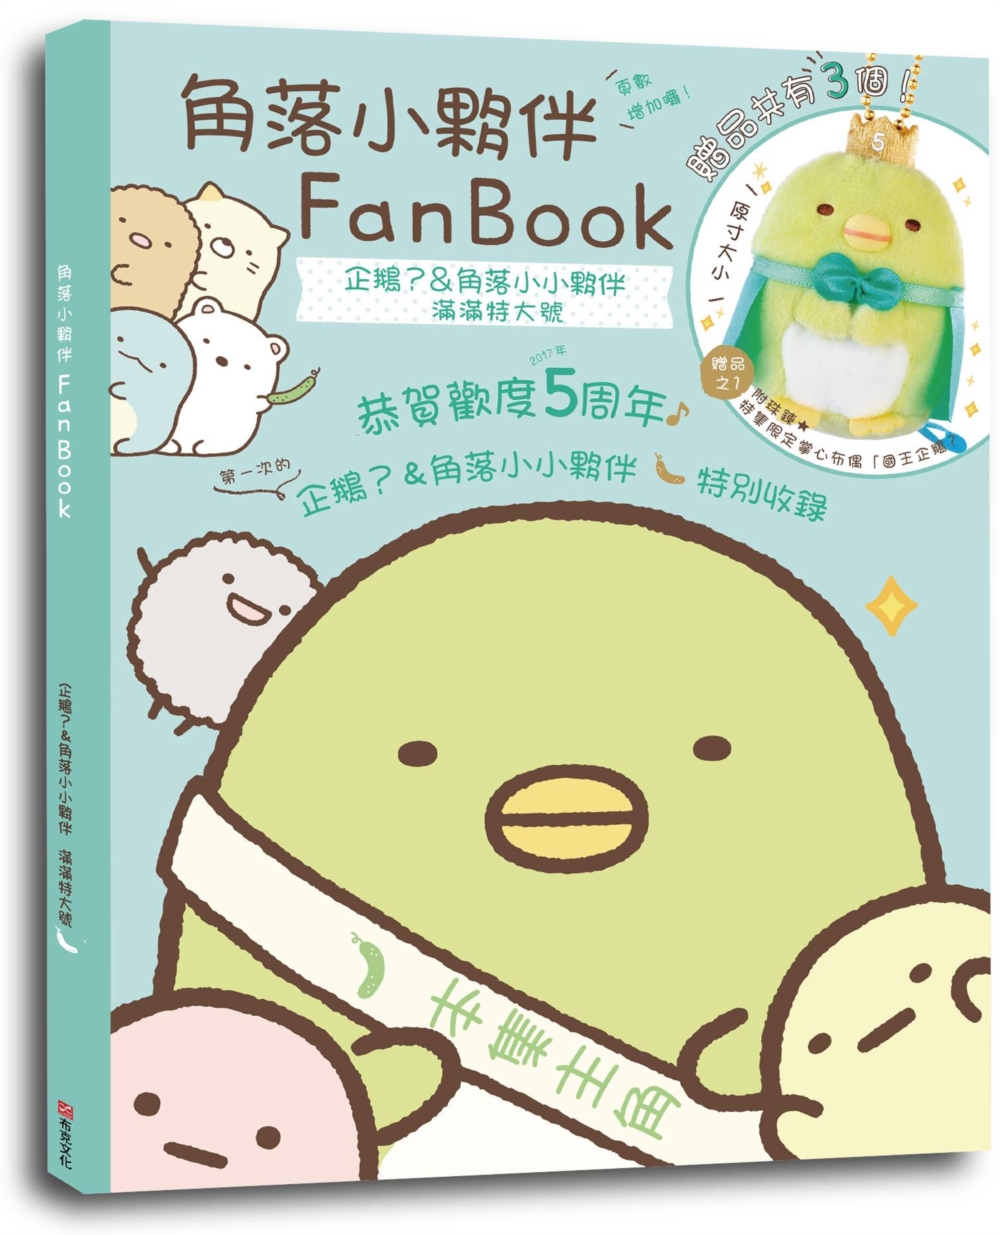 角落小夥伴FanBook：企鵝?&角落小小夥伴 滿滿特大號(...